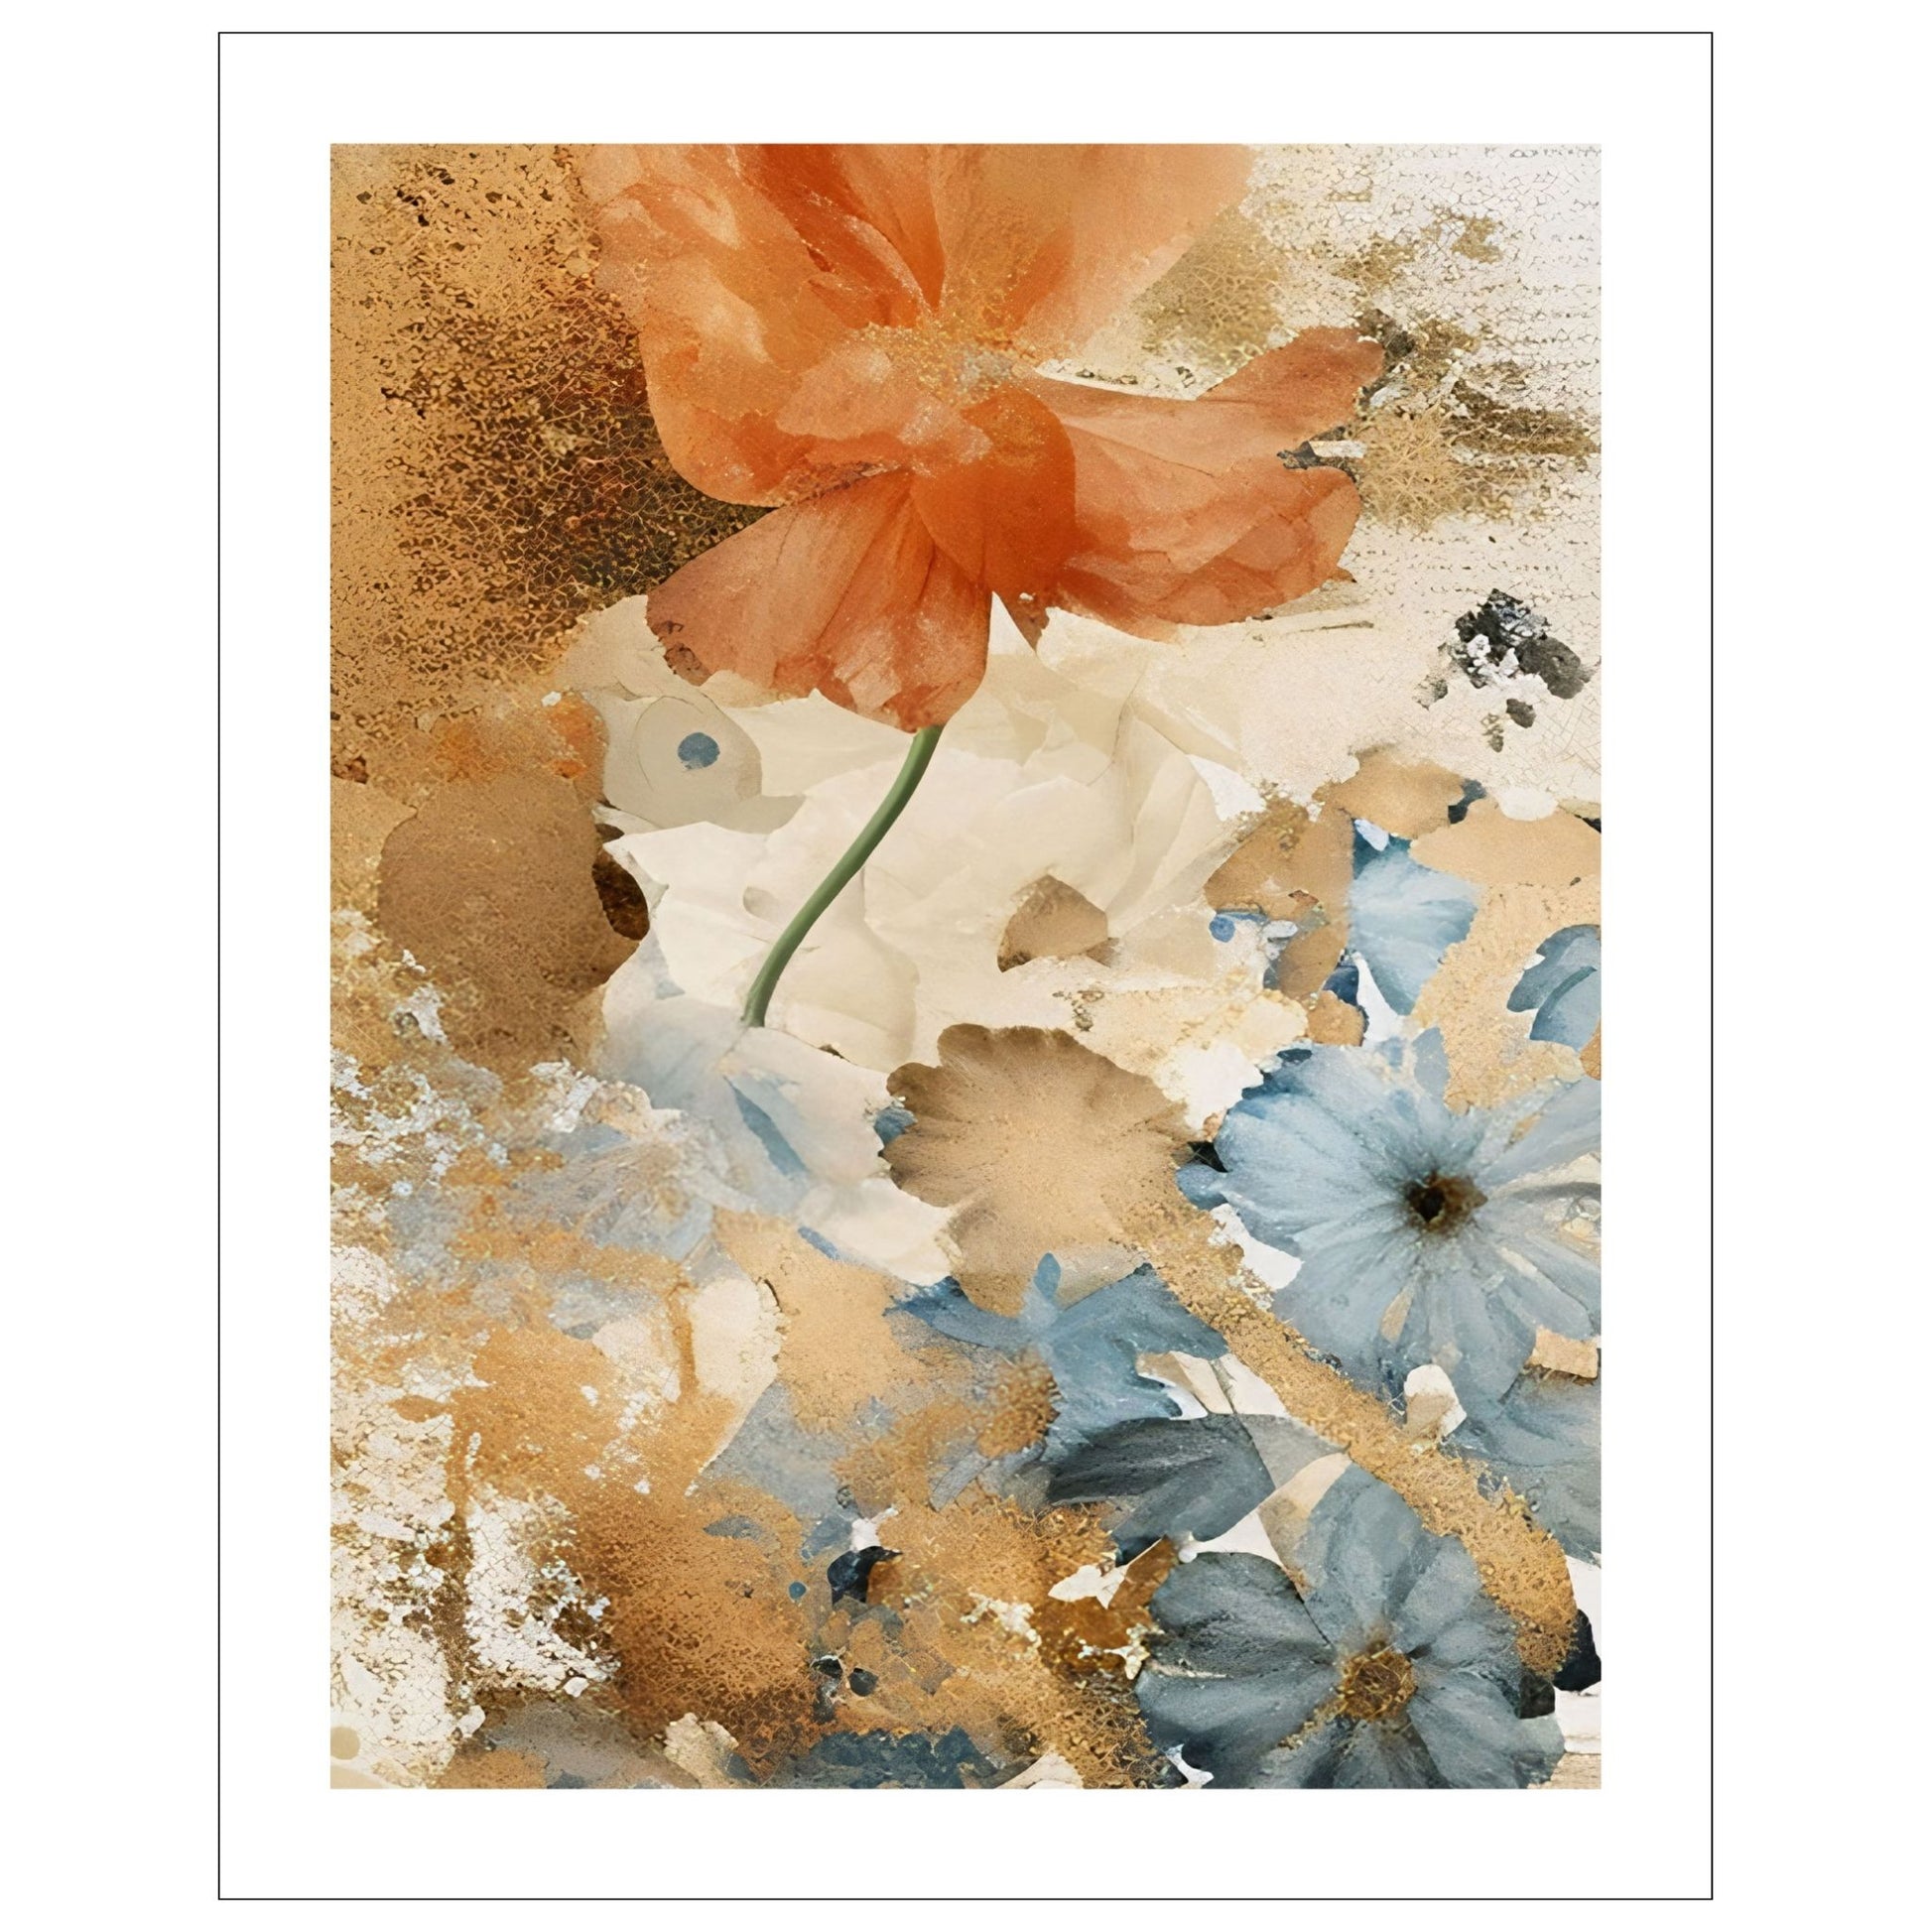 Abstract Floral No1. Grafisk akvarell i duse fargenyanser i rust, lyseblått og beige. Plakaten har en hvit, dekorativ kant.